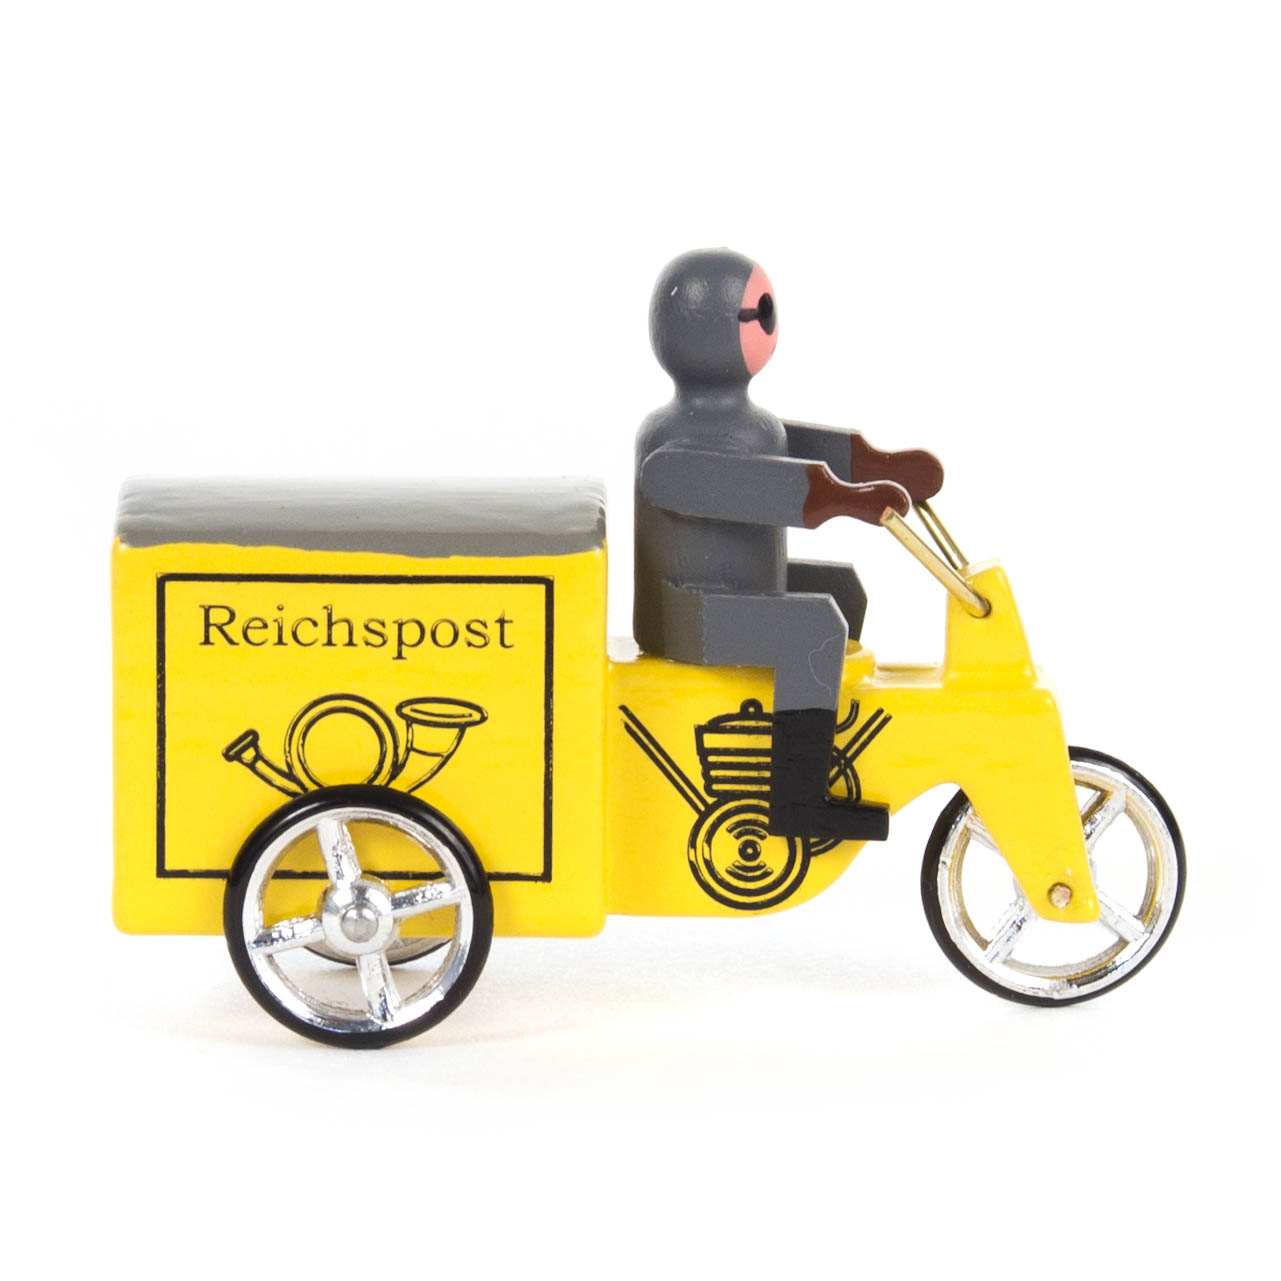 Miniatur-Dreirad "Reichspost", gelb